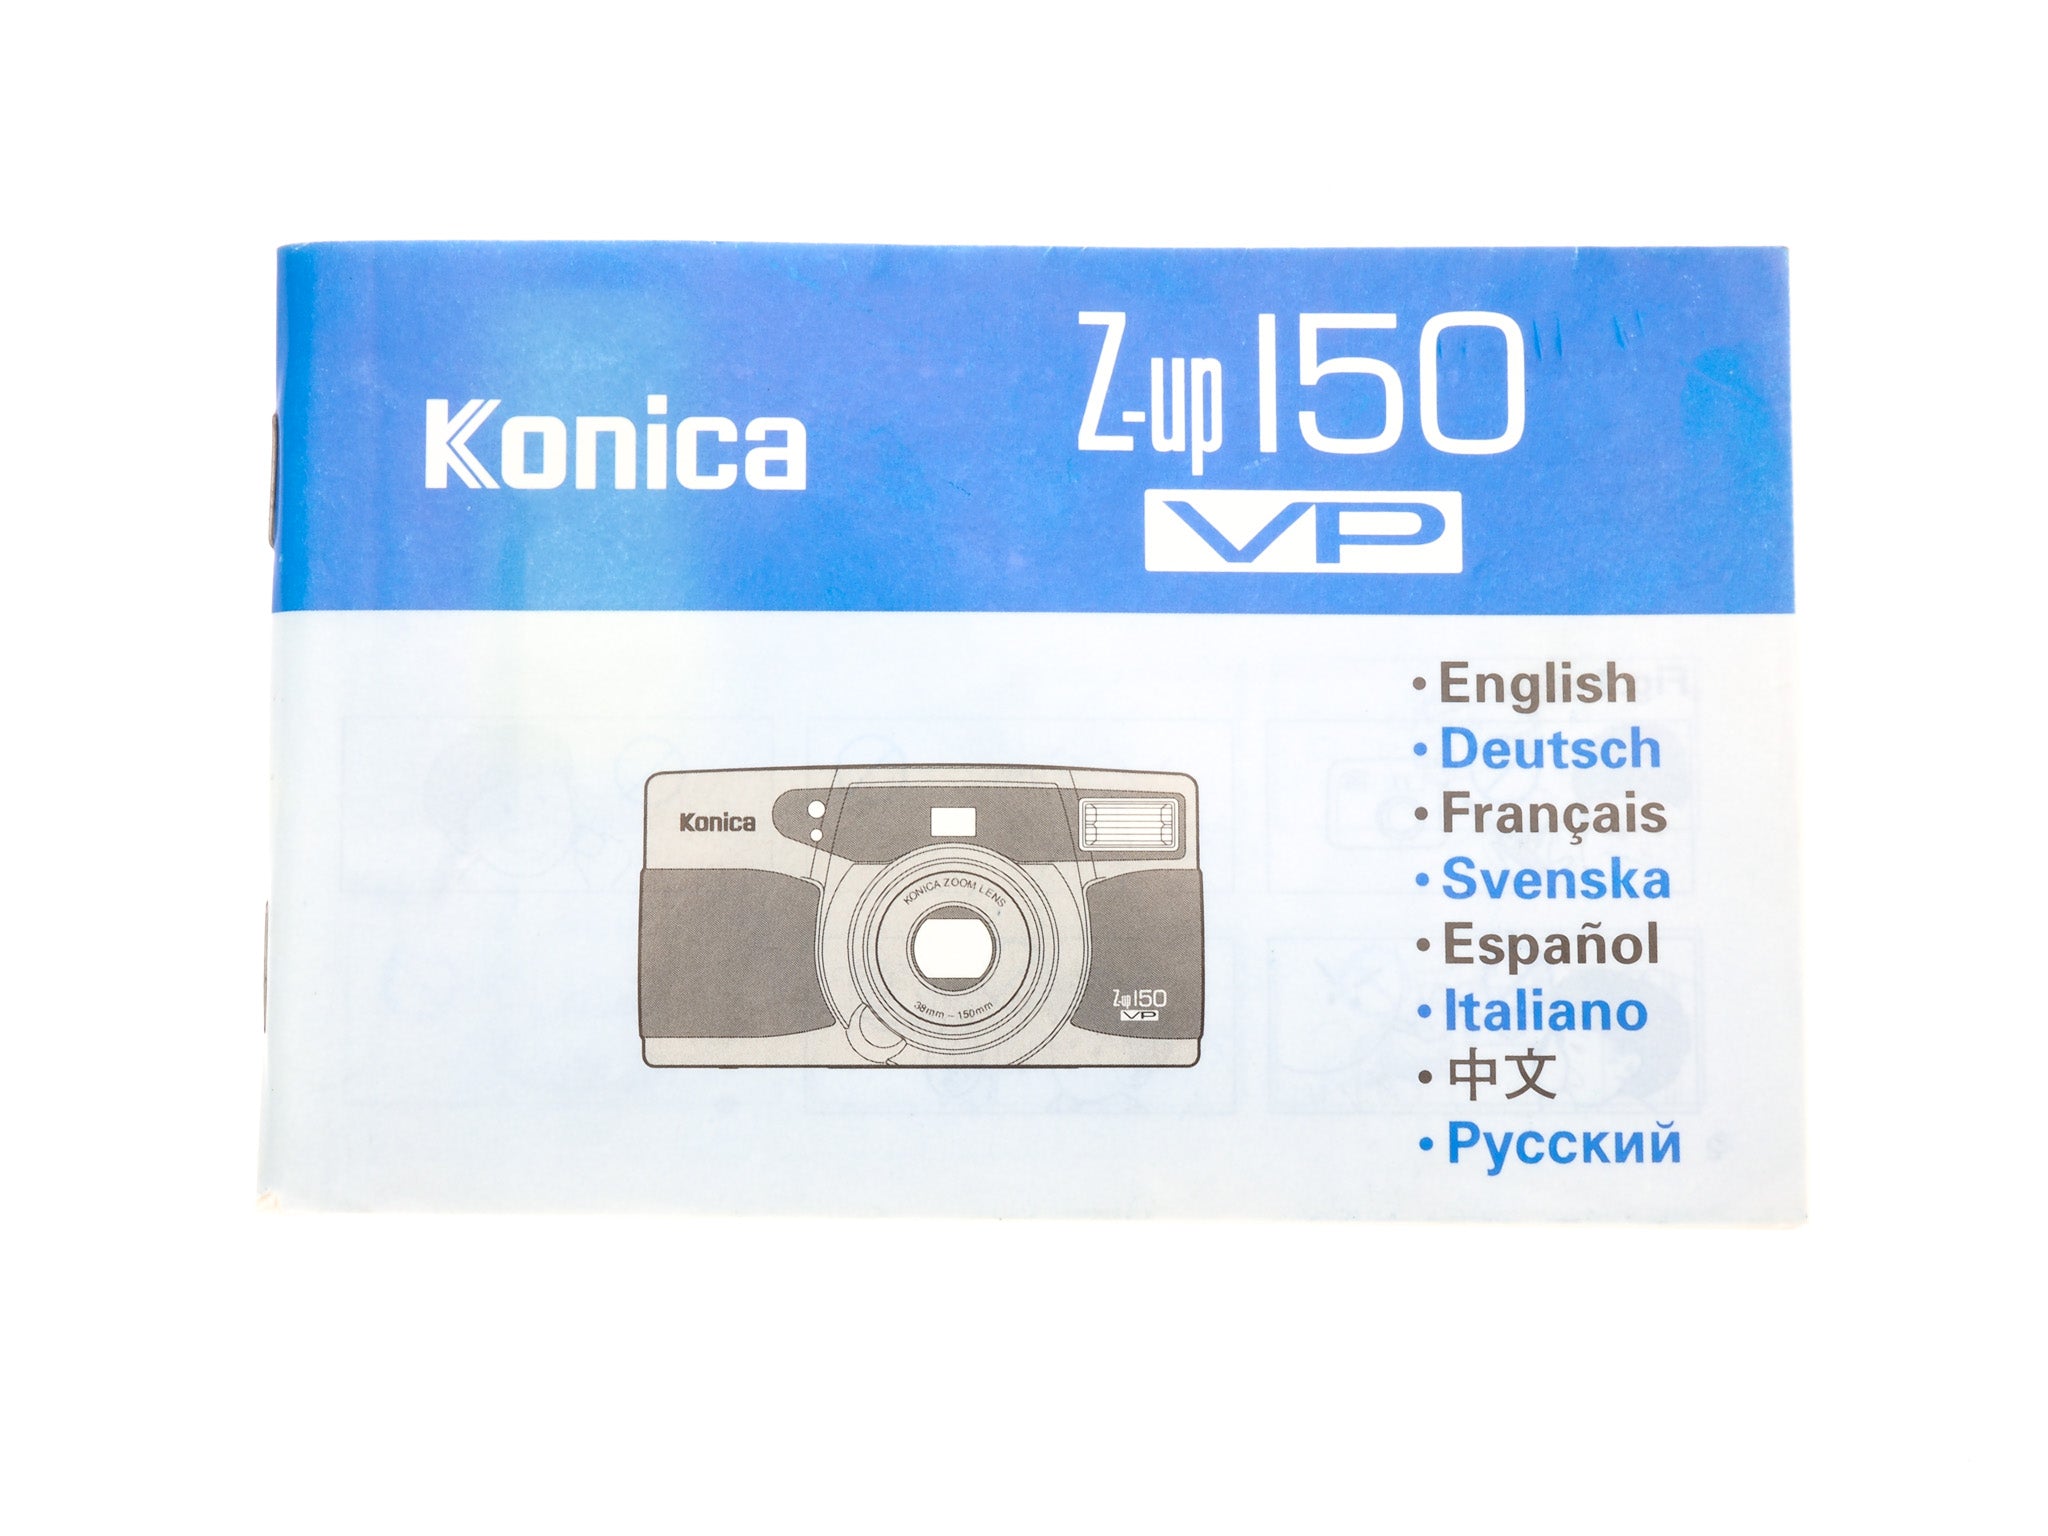 Konica Z-up 150 VP Instructions – Kamerastore